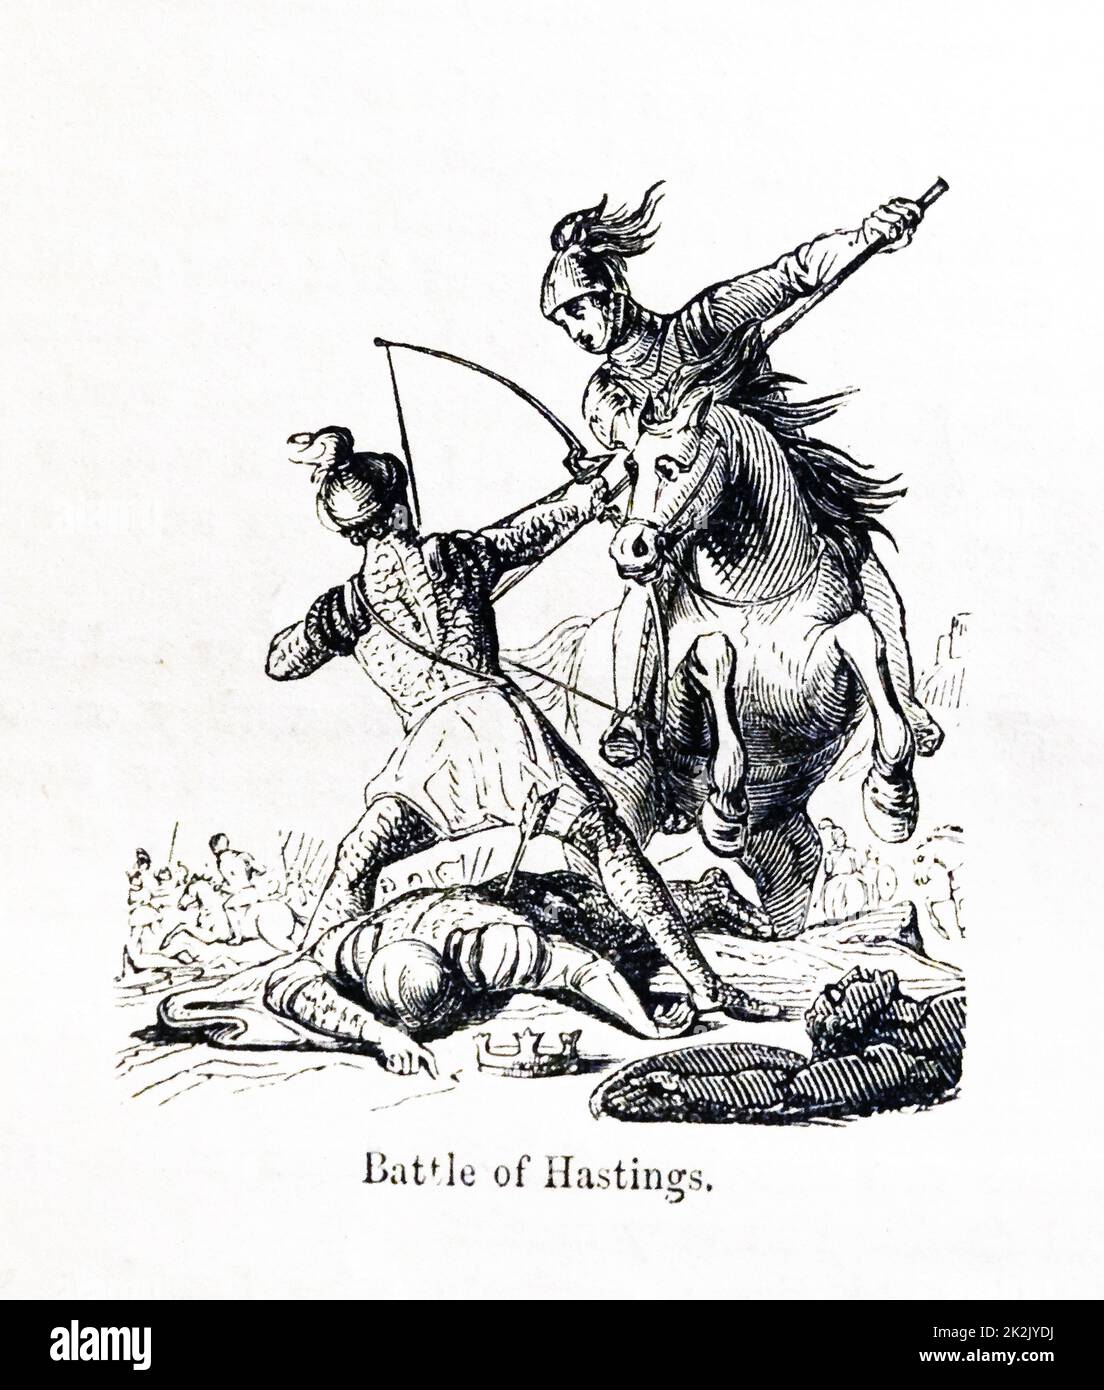 Die Schlacht von Hastings wurde am 14 Oktober 1066 zwischen der Norman-Französisch Armee des Herzogs William II von Normandie und eine englische Armee unter dem angelsächsischen König Harold Godwinson, Beginn der normannischen Eroberung Englands gekämpft. Stockfoto